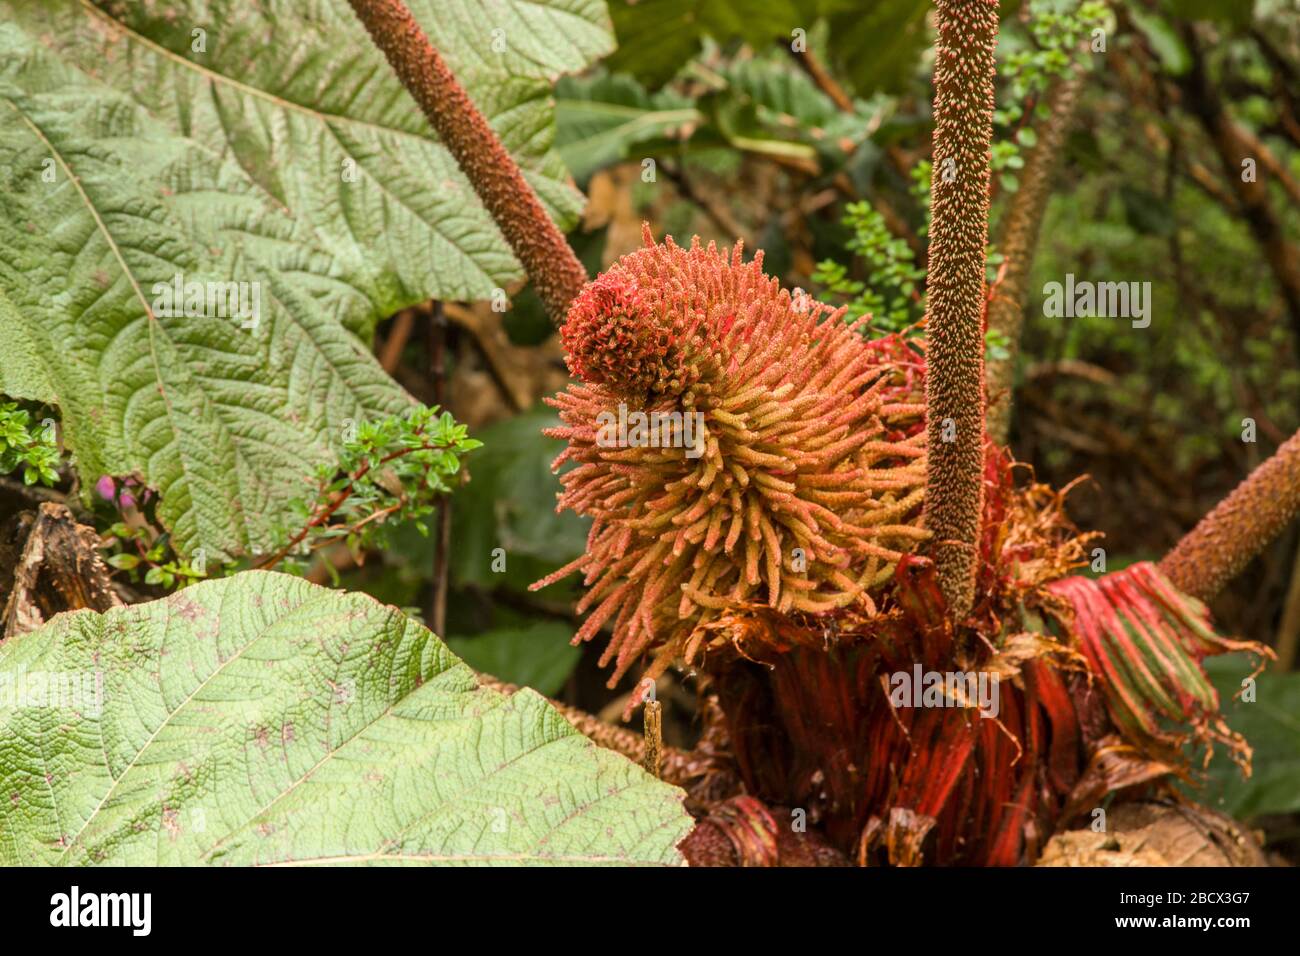 Die Regenschirmpflanze des armen Mannes, Gunnera insignis, eine breit gestelzte Regenwaldbodenpflanze, gehört zur Familie der Rhabarber. Die massiven Blätter sind von Stockfoto